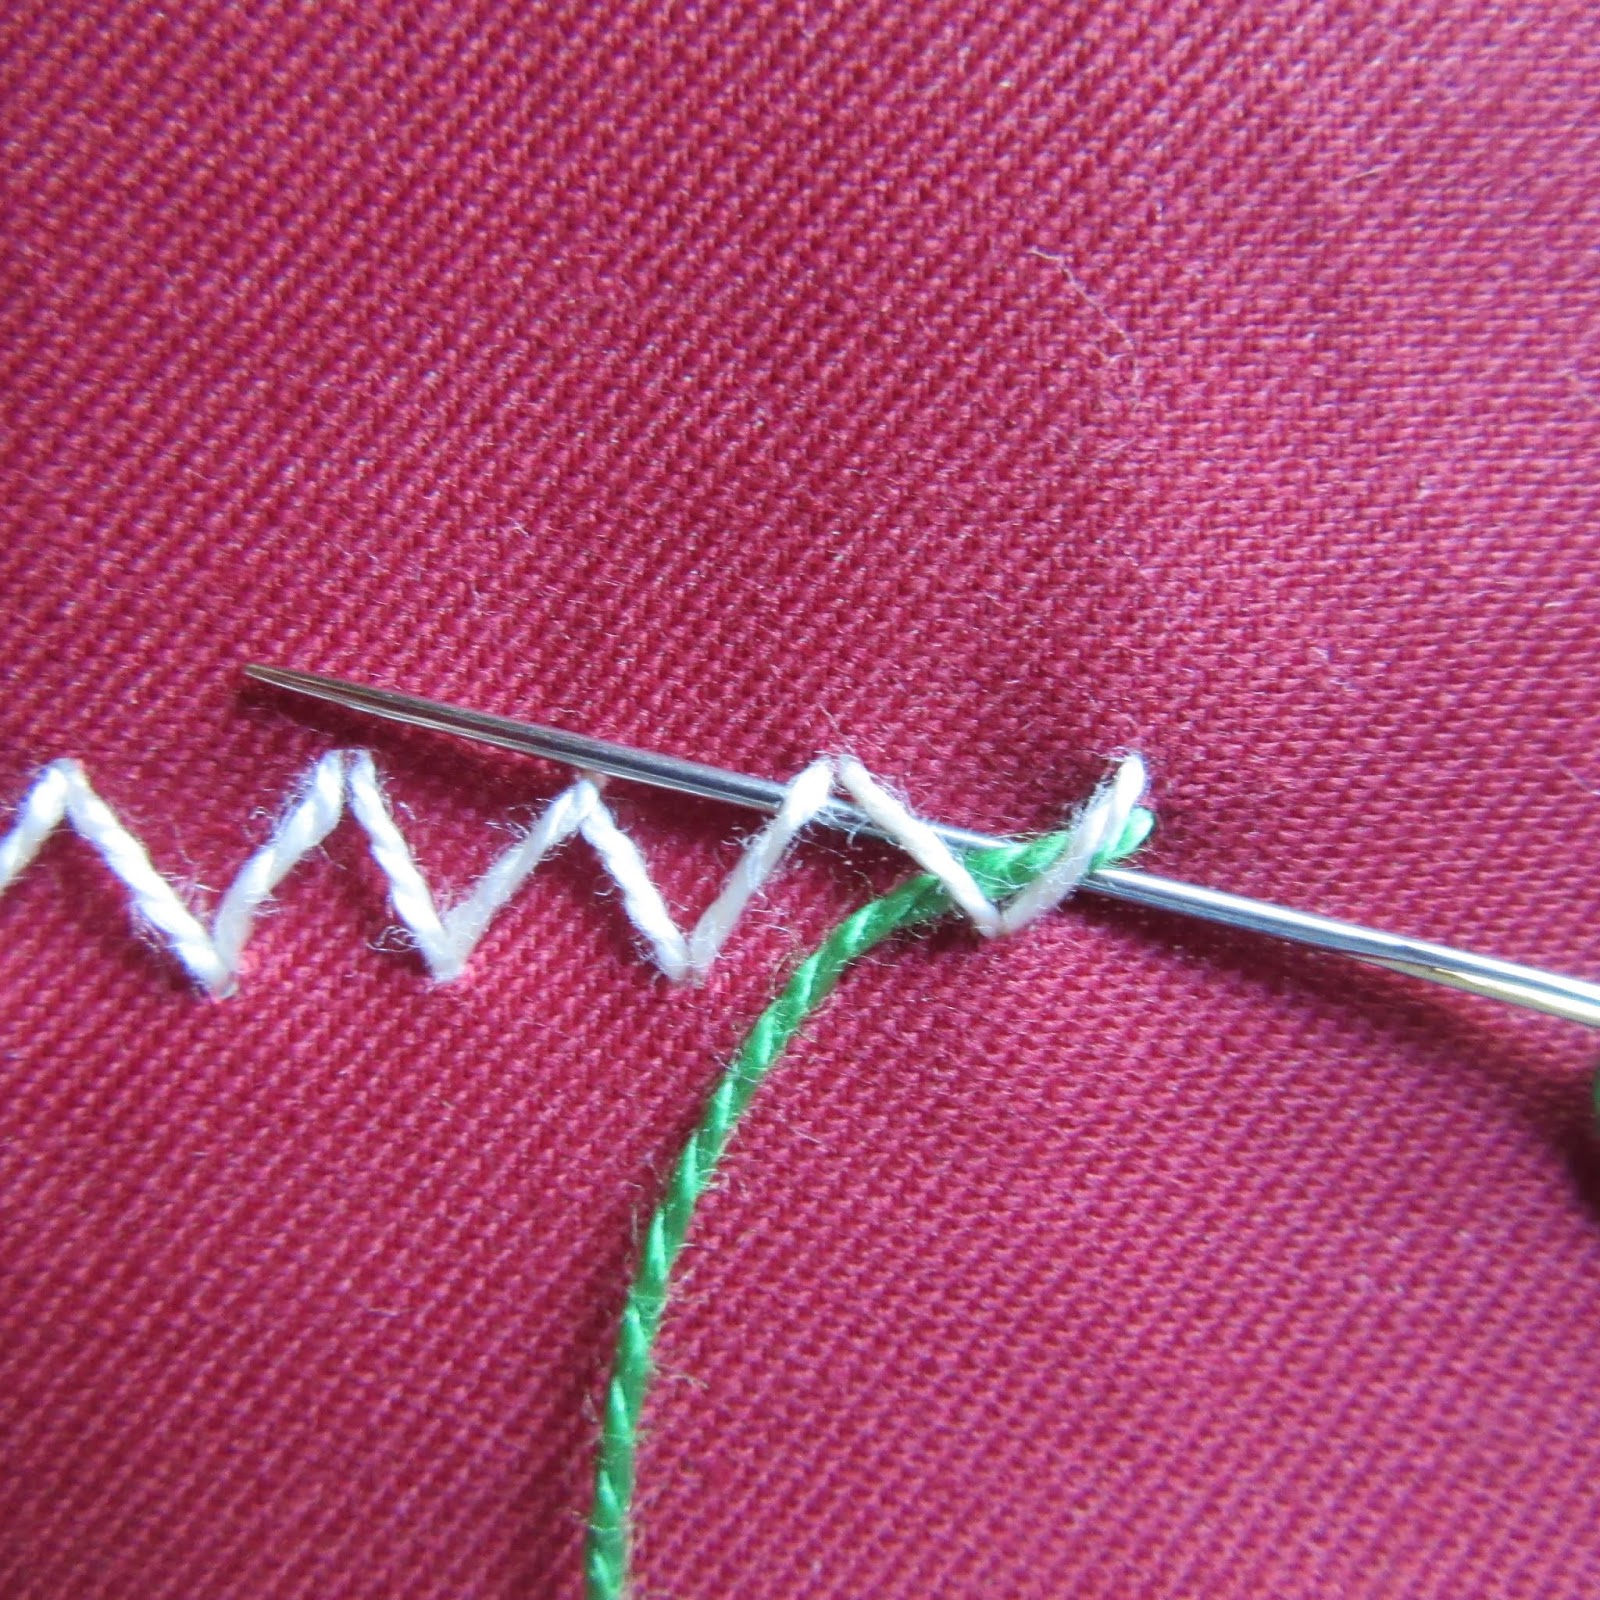 Queenie's Needlework: Sunday Stitch School - Lesson 72: Sham Hem Stitch